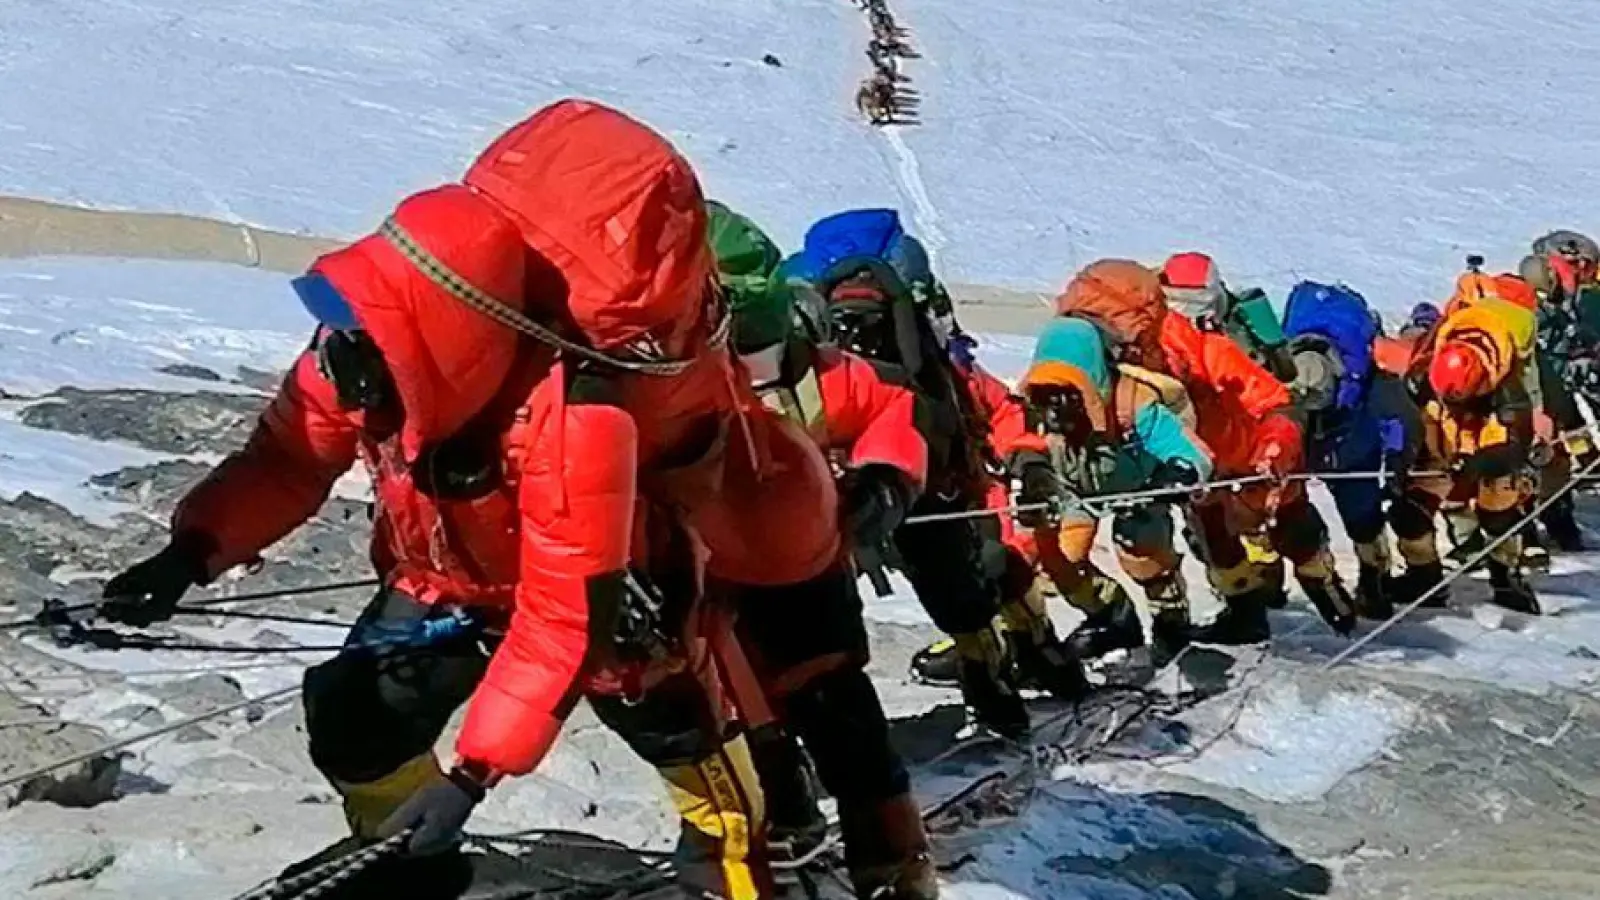 Wer den Mount Everest in Nepal besteigt, ist dort schon lange nicht mehr allein unterwegs. (Foto: Rizza Alee/AP/dpa)